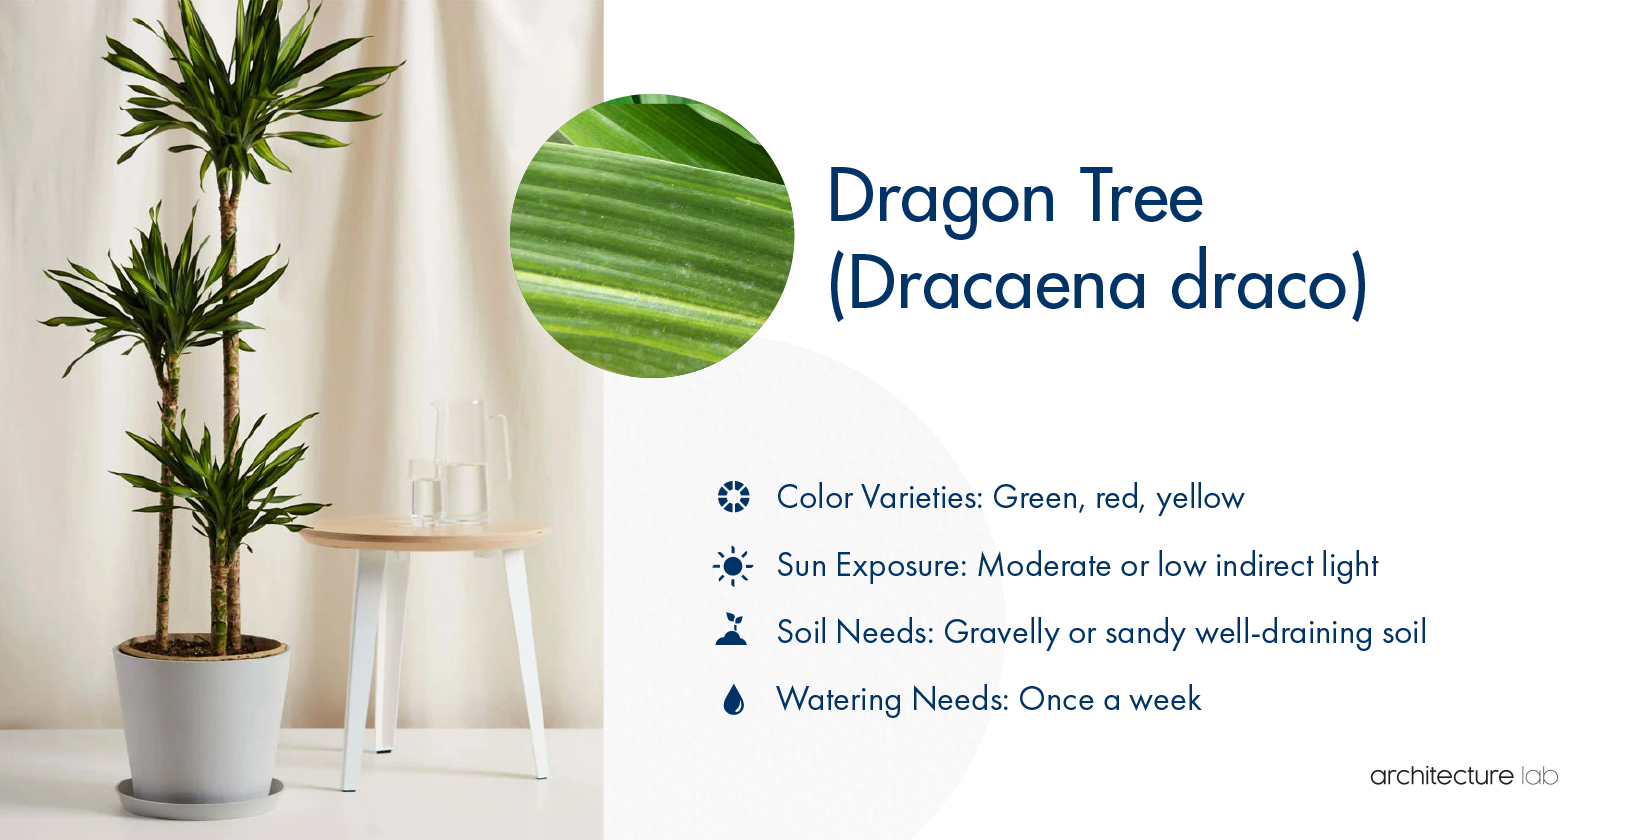 5. Dragon tree (dracaena draco)